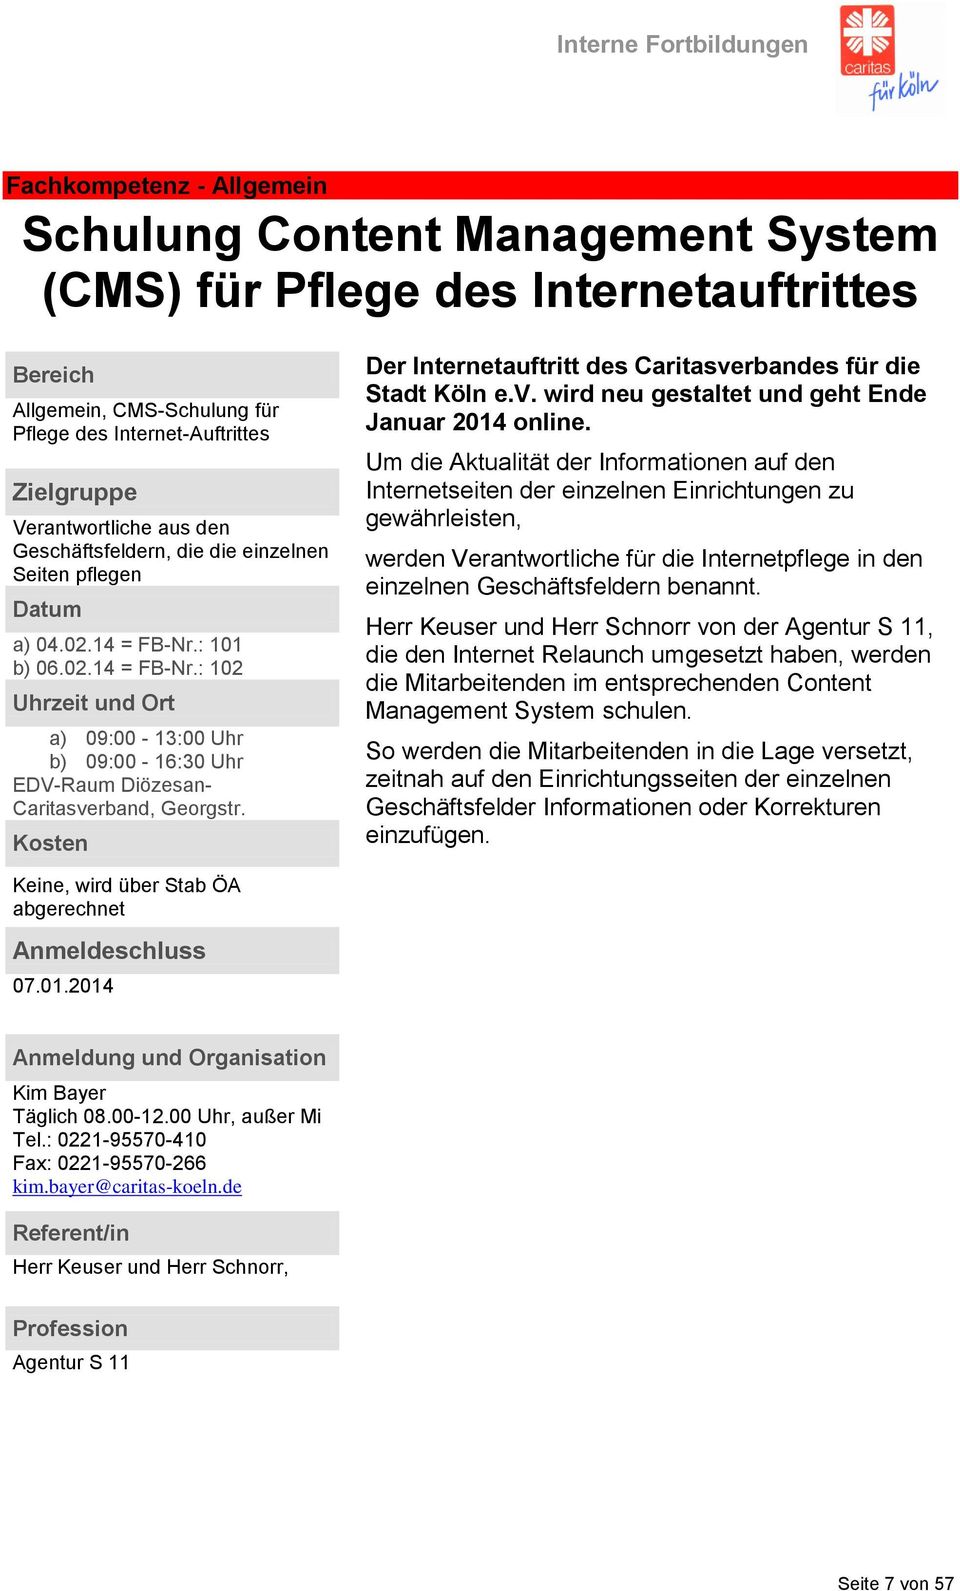 Der Internetauftritt des Caritasverbandes für die Stadt Köln e.v. wird neu gestaltet und geht Ende Januar 2014 online.